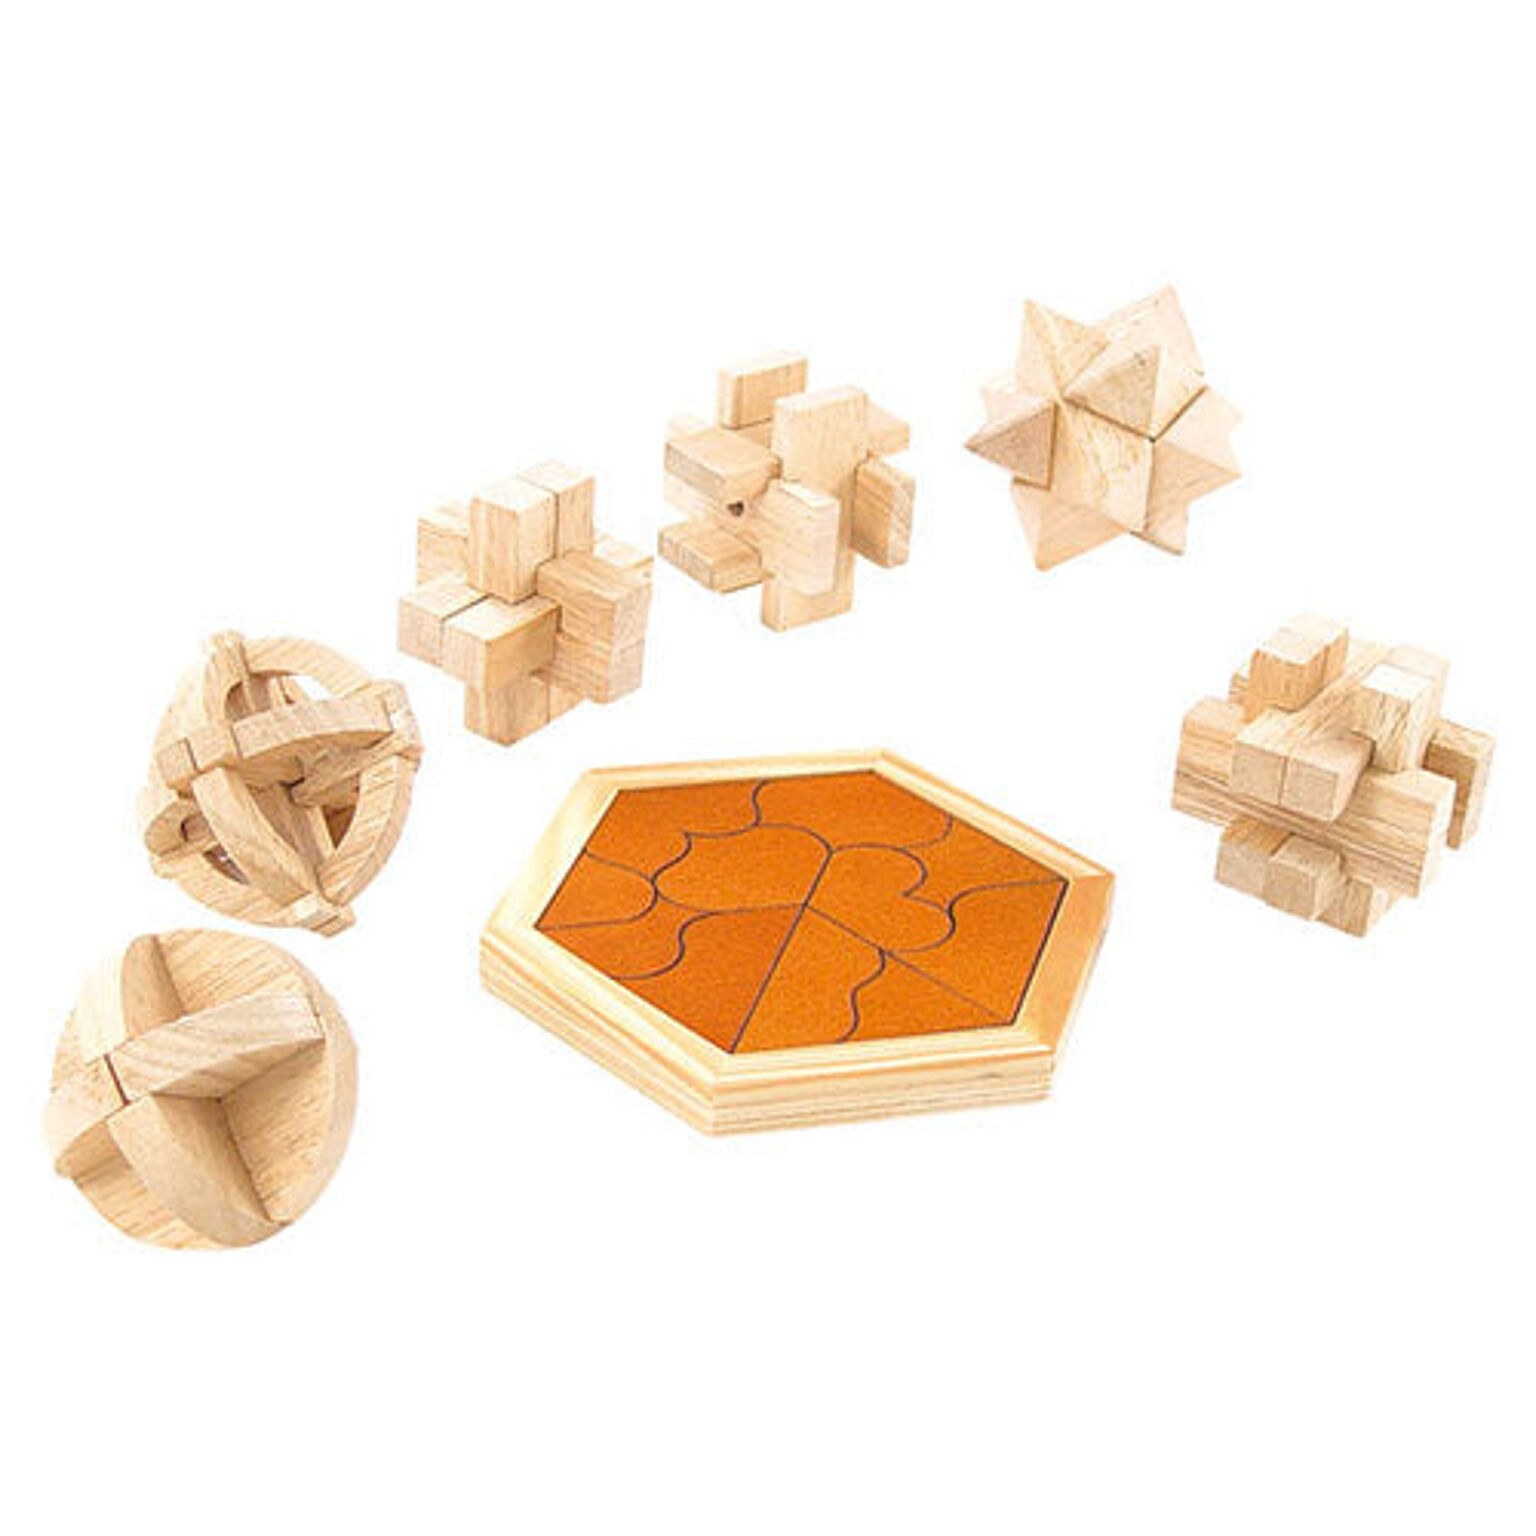 大人のための木製パズル7点セット K20661810 通販 RoomClipショッピング